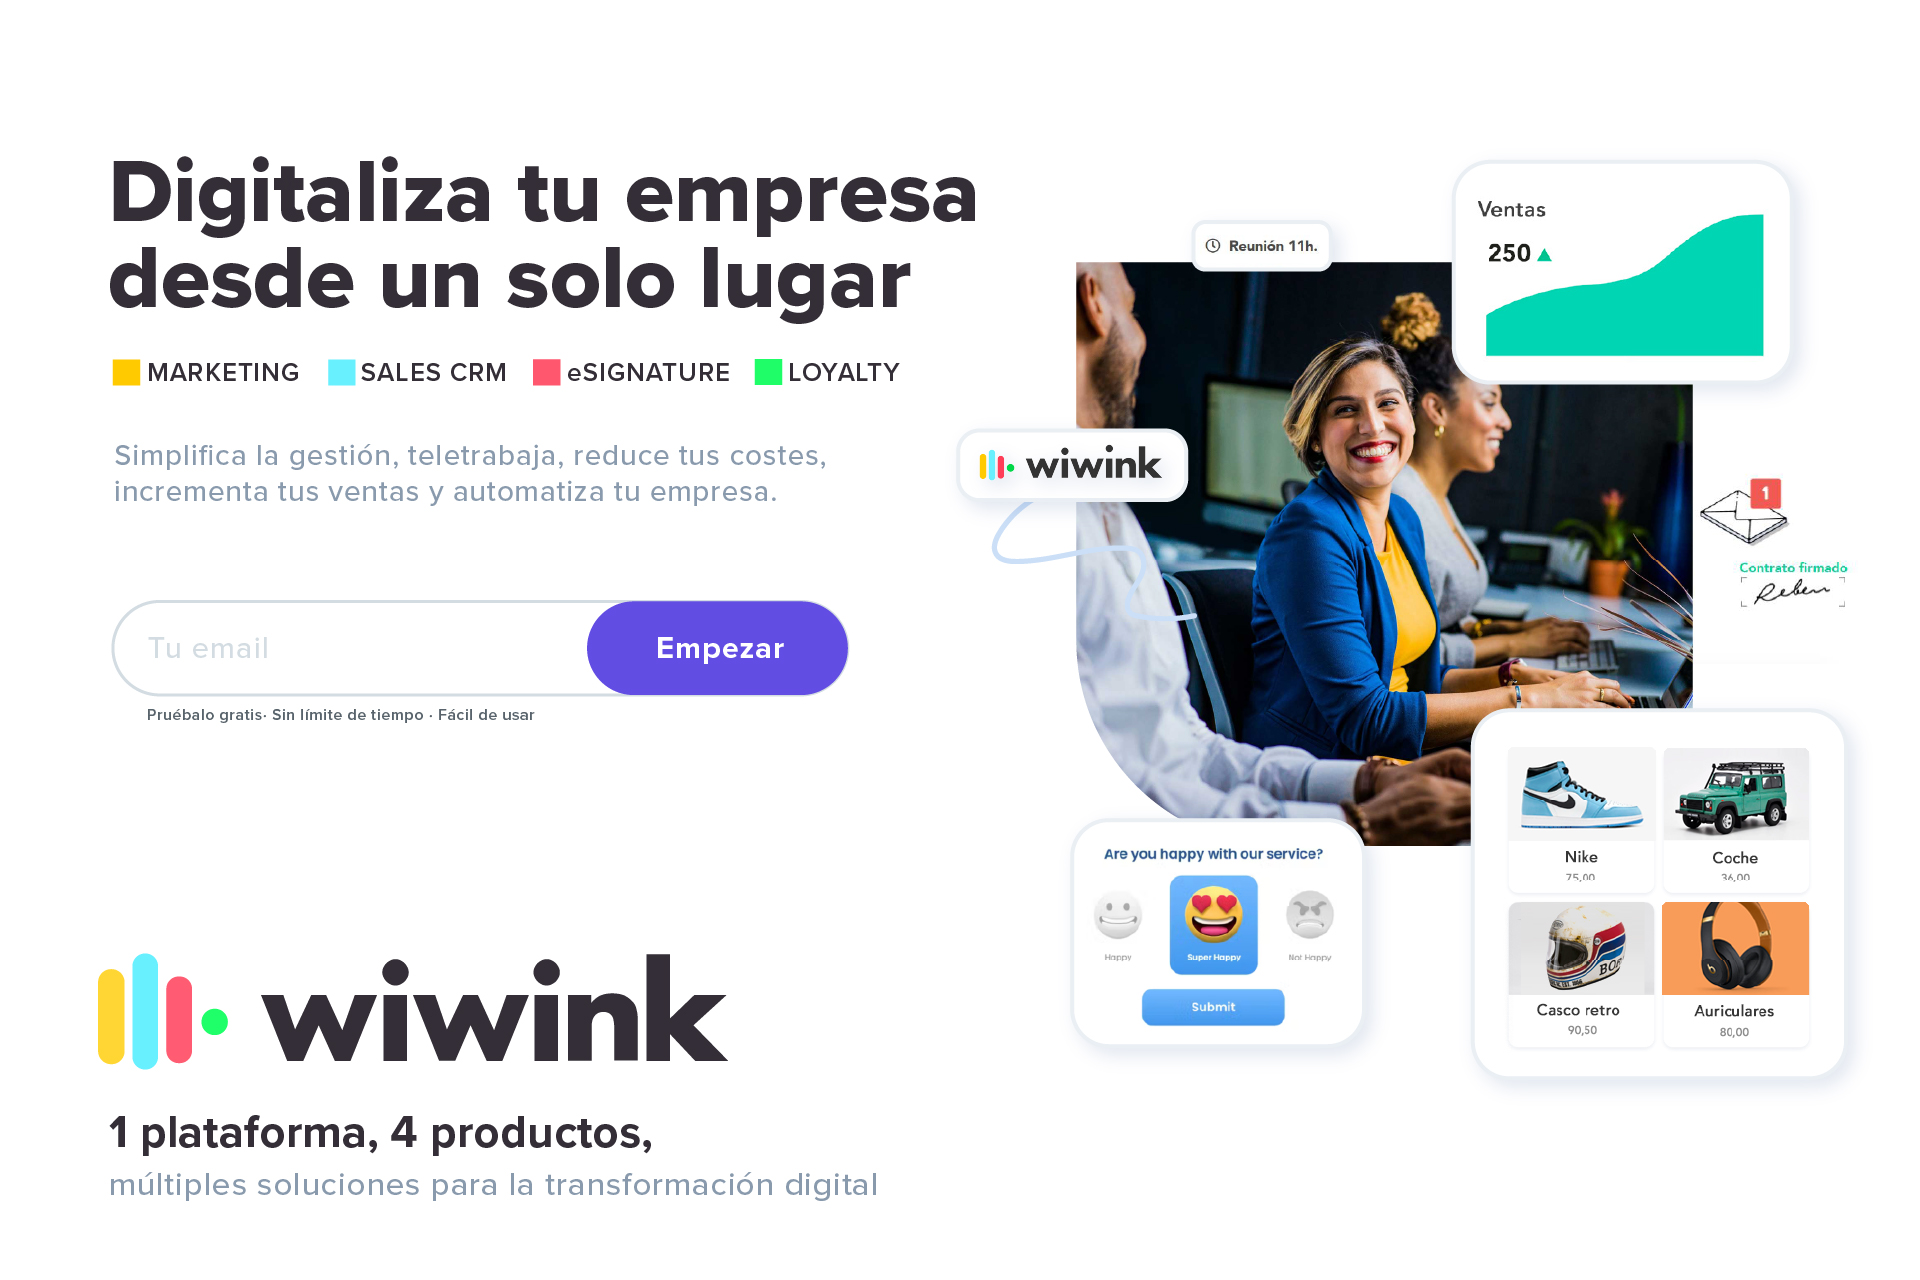 Wiwink y su plataforma 4×4 es la solución perfecta para acortar la brecha digital en PYMES y autónomos